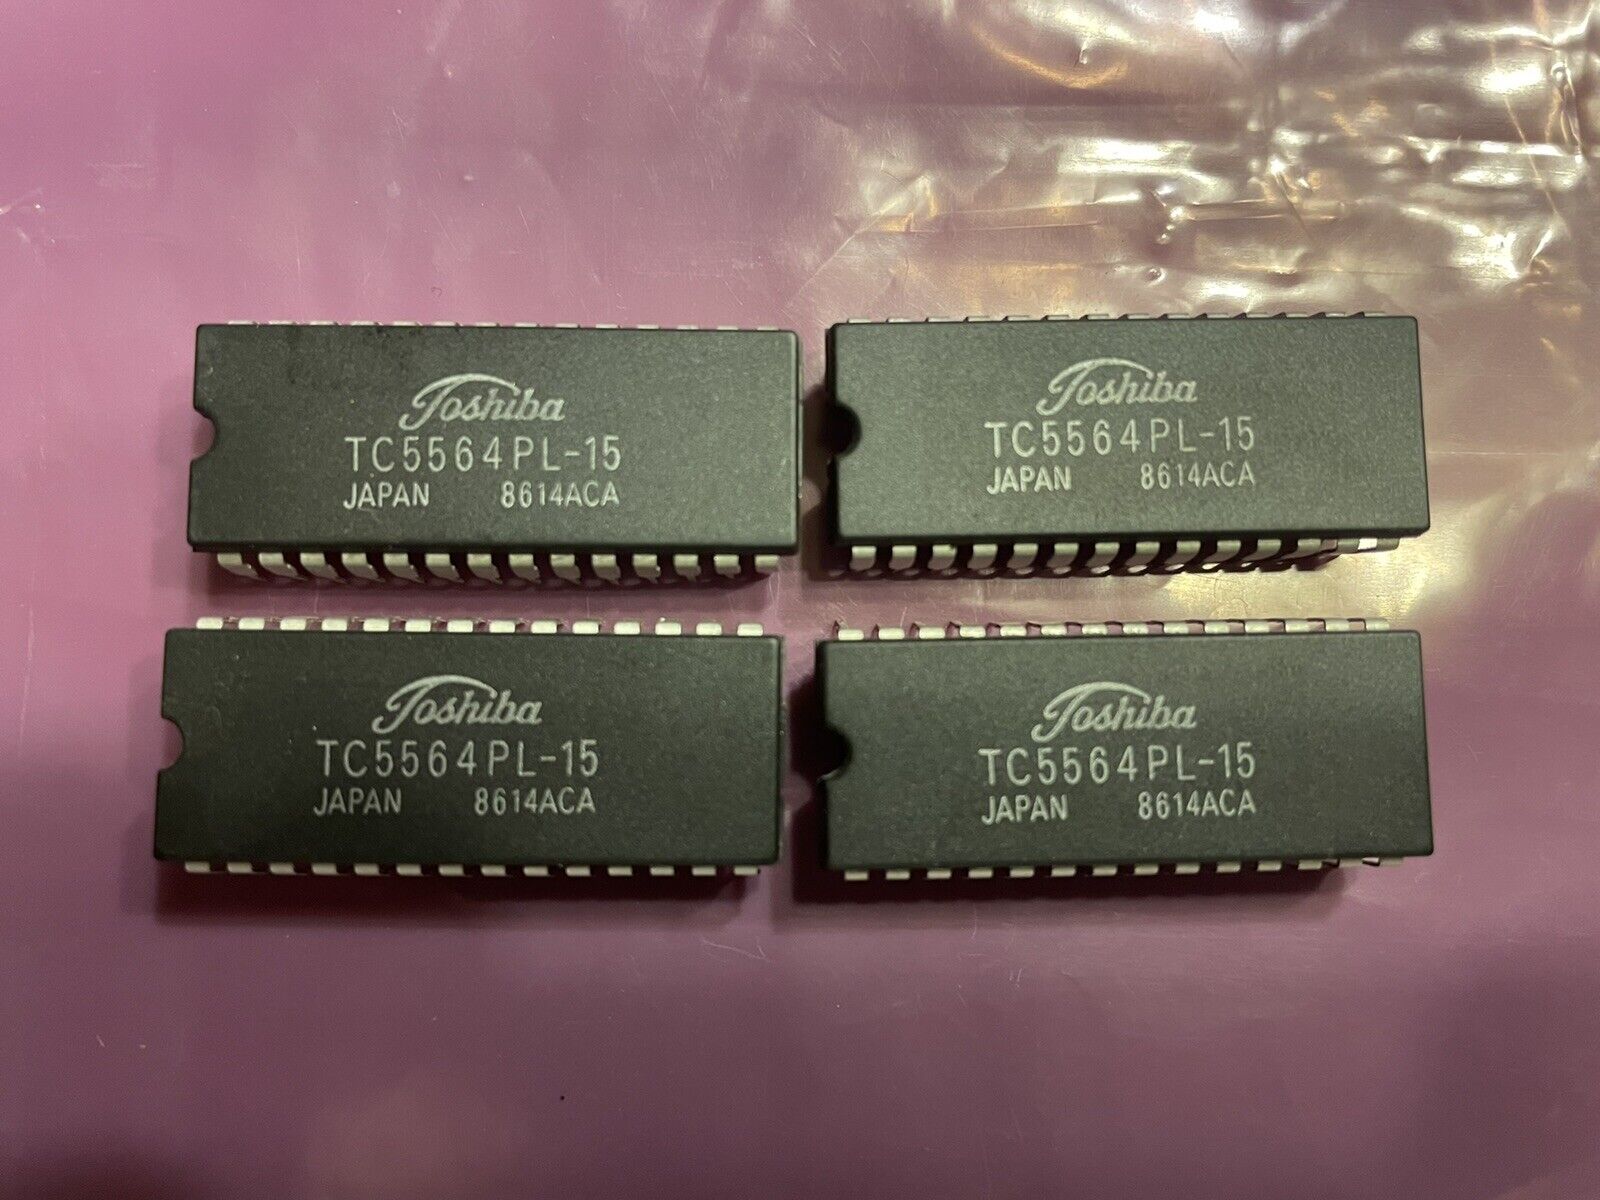 Toshiba TC5564PL-15 RAM, Quantity 4